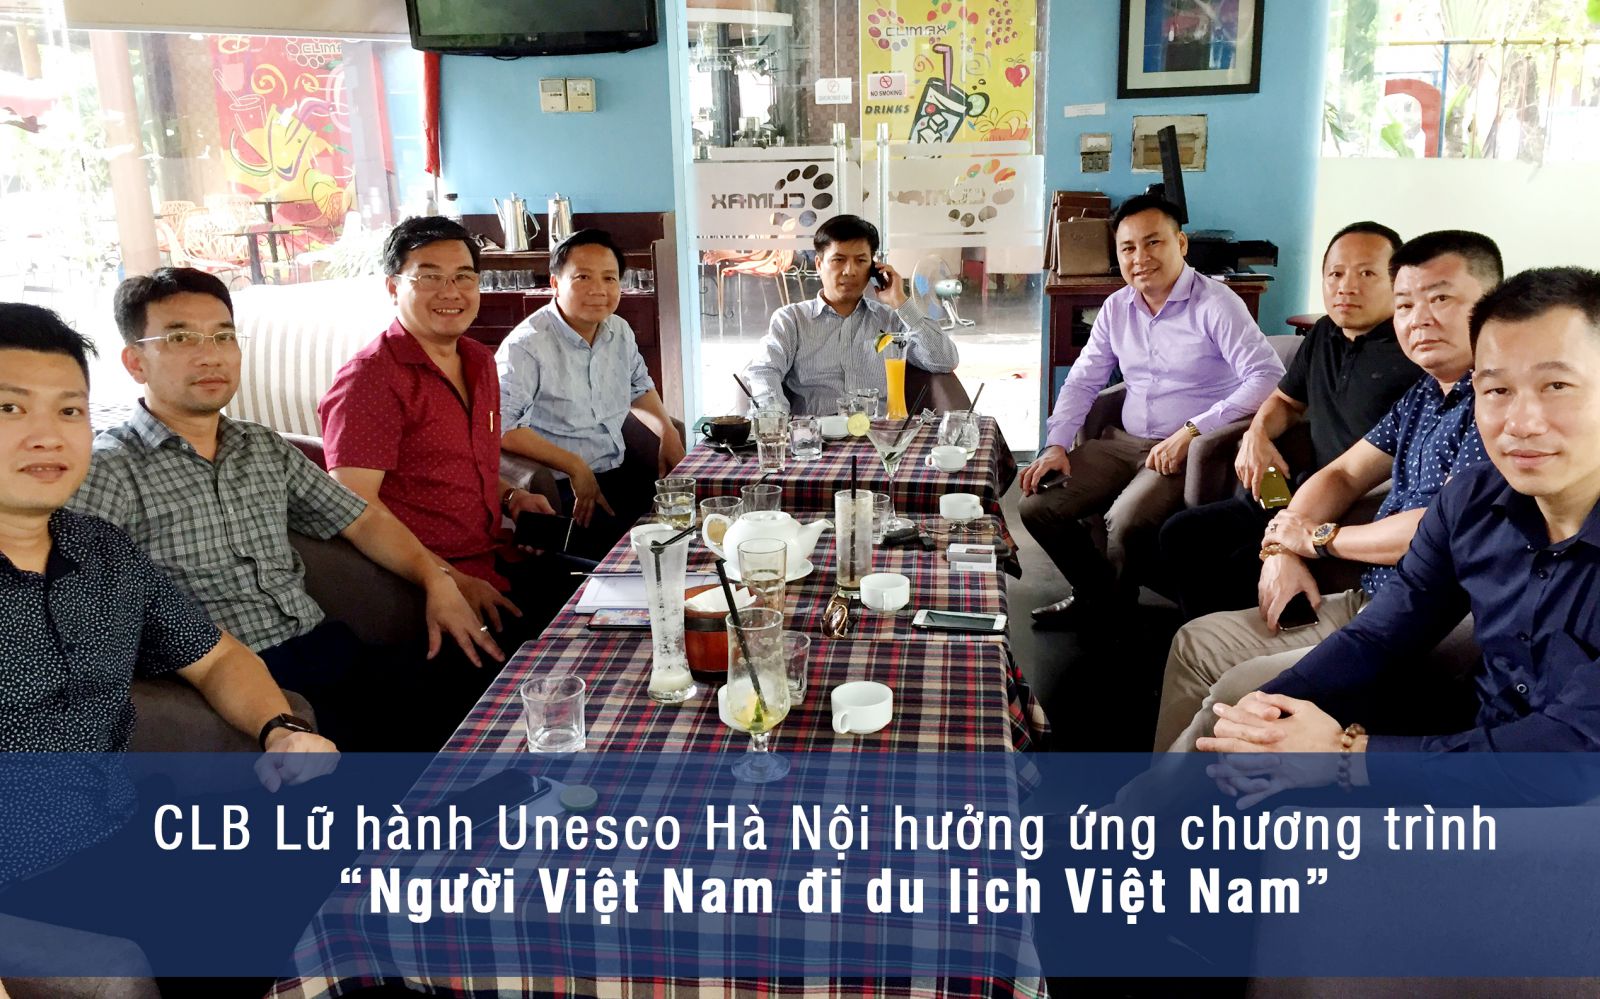 Hưởng ứng chương trình “Người Việt Nam đi du lịch Việt Nam” của Bộ Văn hóa